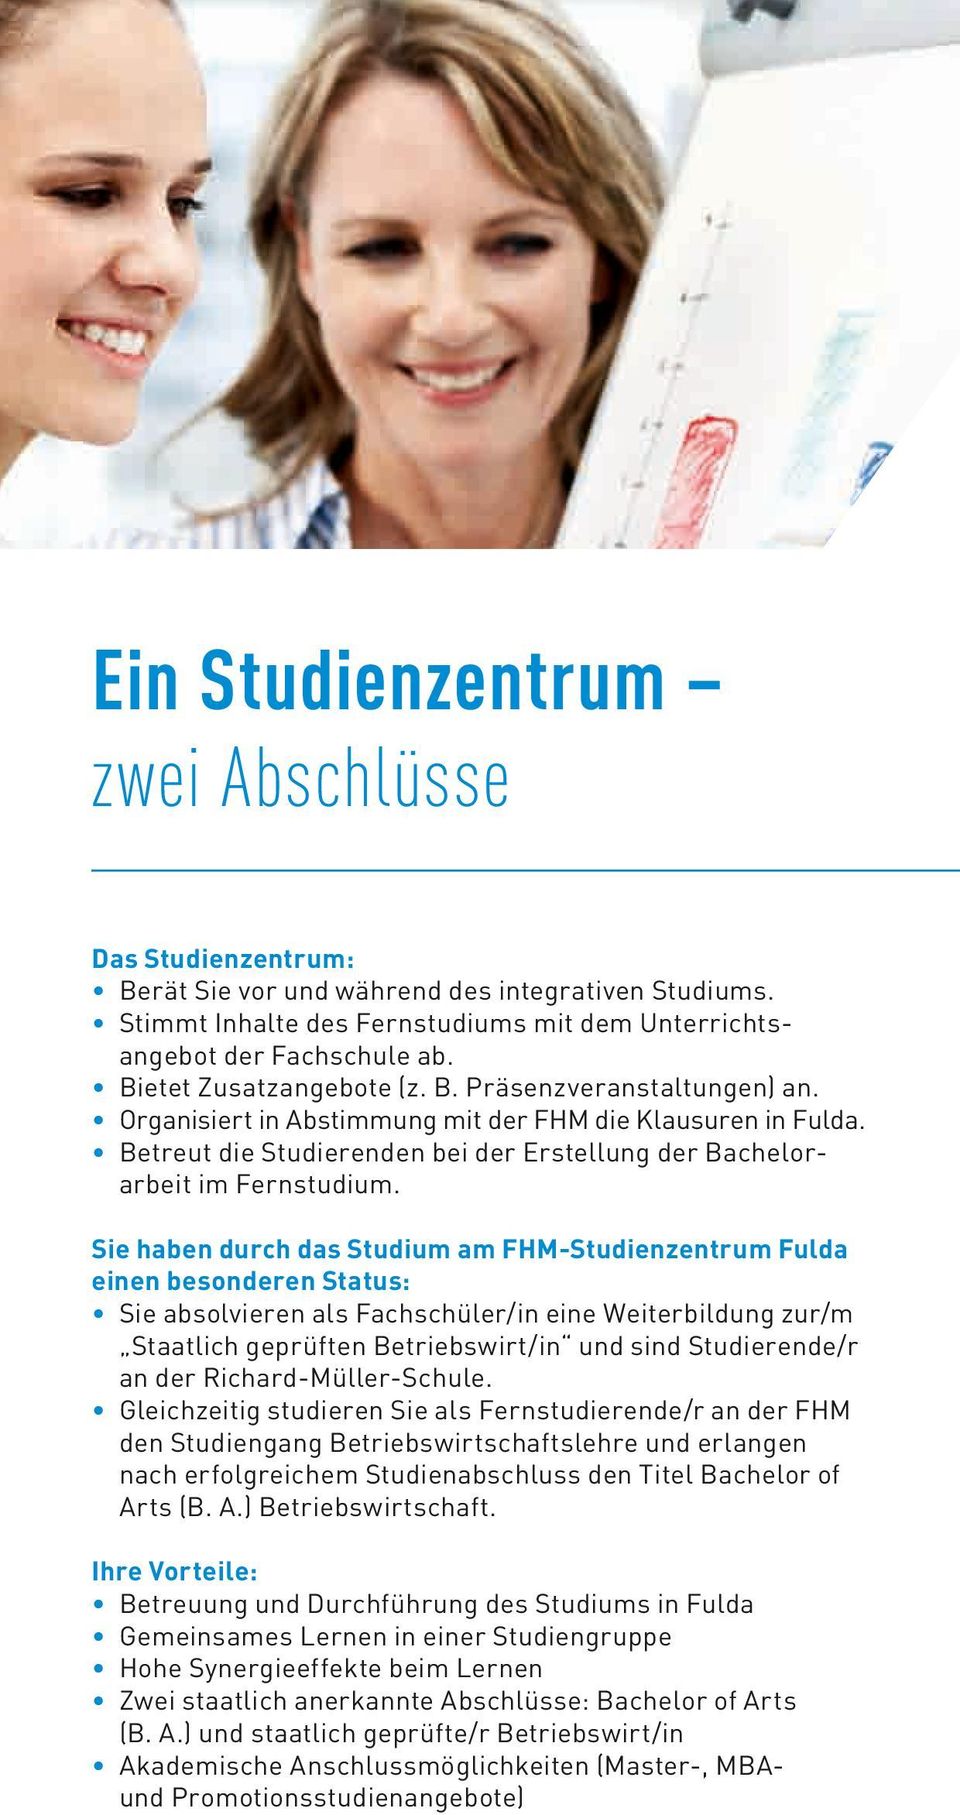 Sie haben durch das Studium am FHM-Studienzentrum Fulda einen besonderen Status: Sie absolvieren als Fachschüler/in eine Weiterbildung zur/m Staatlich geprüften Betriebswirt/in und sind Studierende/r